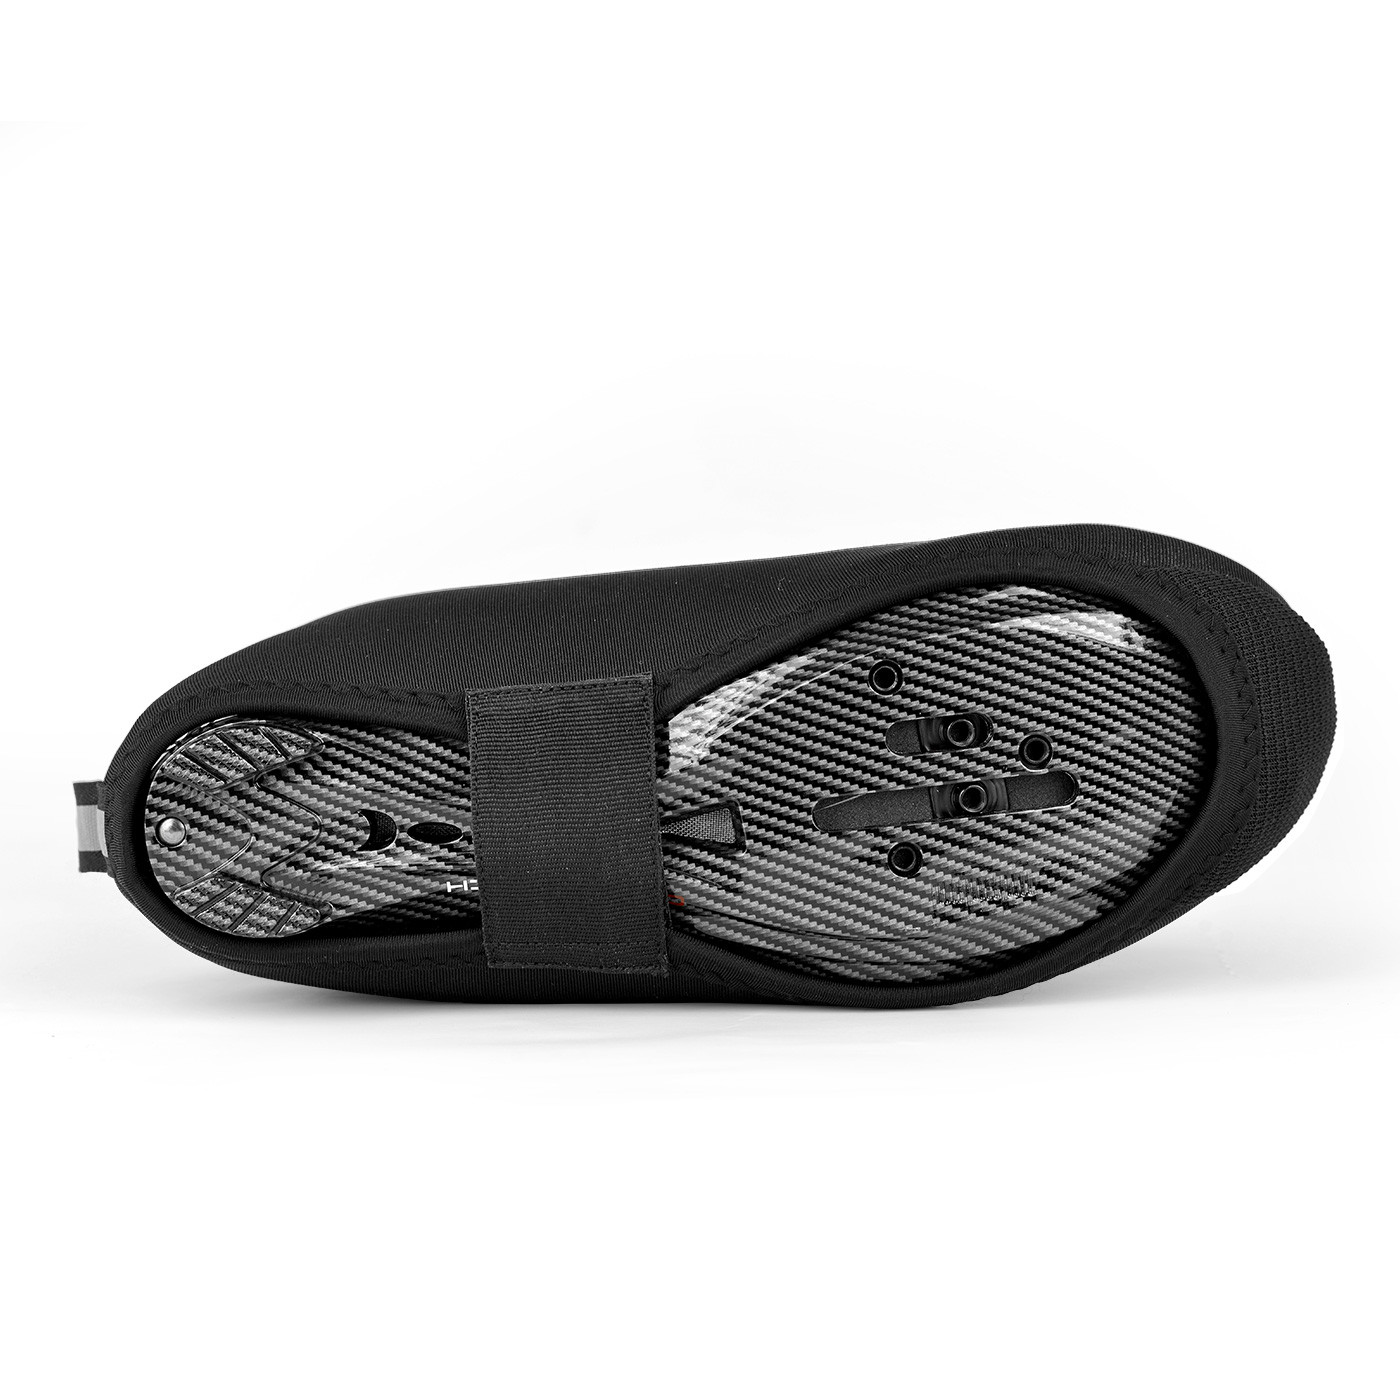 Couvre Chaussures D'Hiver Imperméable Rain Bootie Black SIXS Taille L/XL